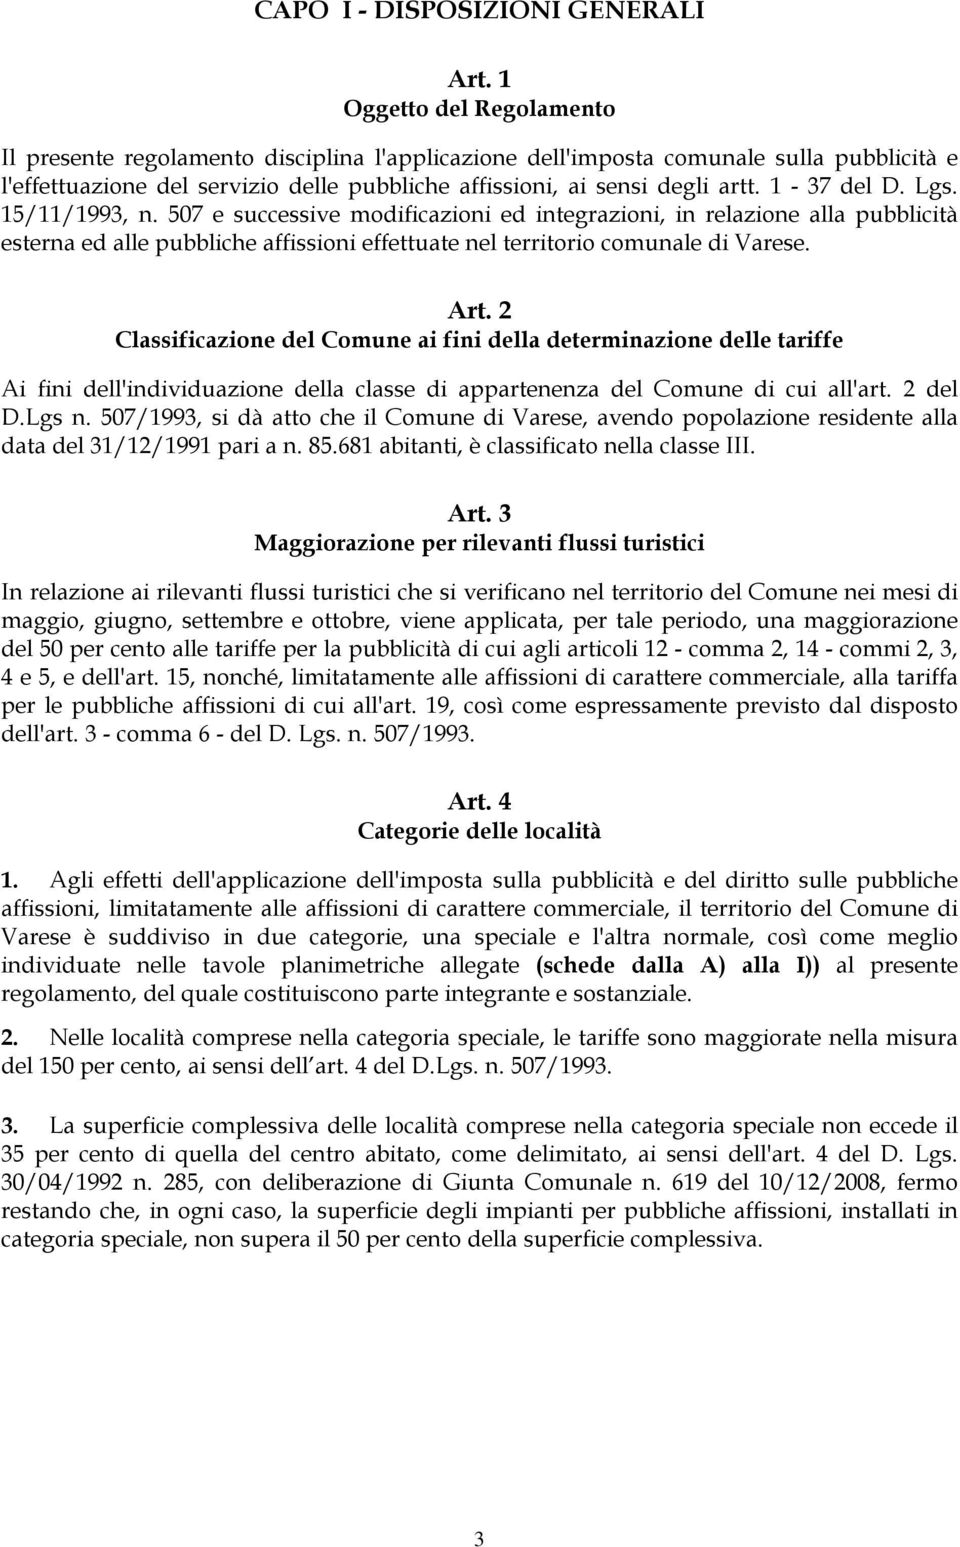 1-37 del D. Lgs. 15/11/1993, n. 507 e successive modificazioni ed integrazioni, in relazione alla pubblicità esterna ed alle pubbliche affissioni effettuate nel territorio comunale di Varese. Art.